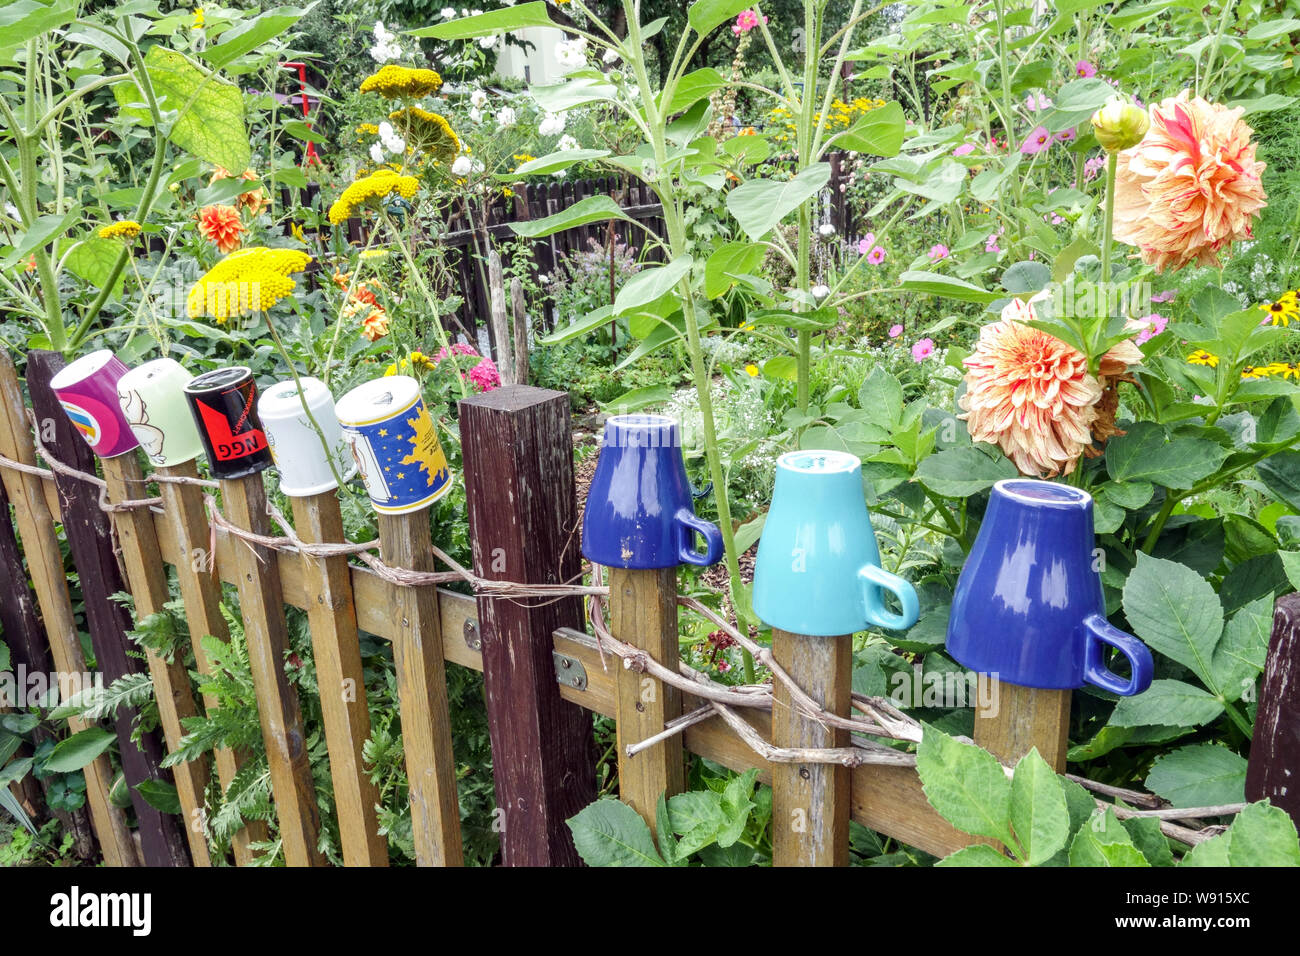 Recinzione in legno nel giardino sovracolto con tazze colorate su tavole, cottage Garden Germania Giardino urbano recinzione in legno giardino Foto Stock